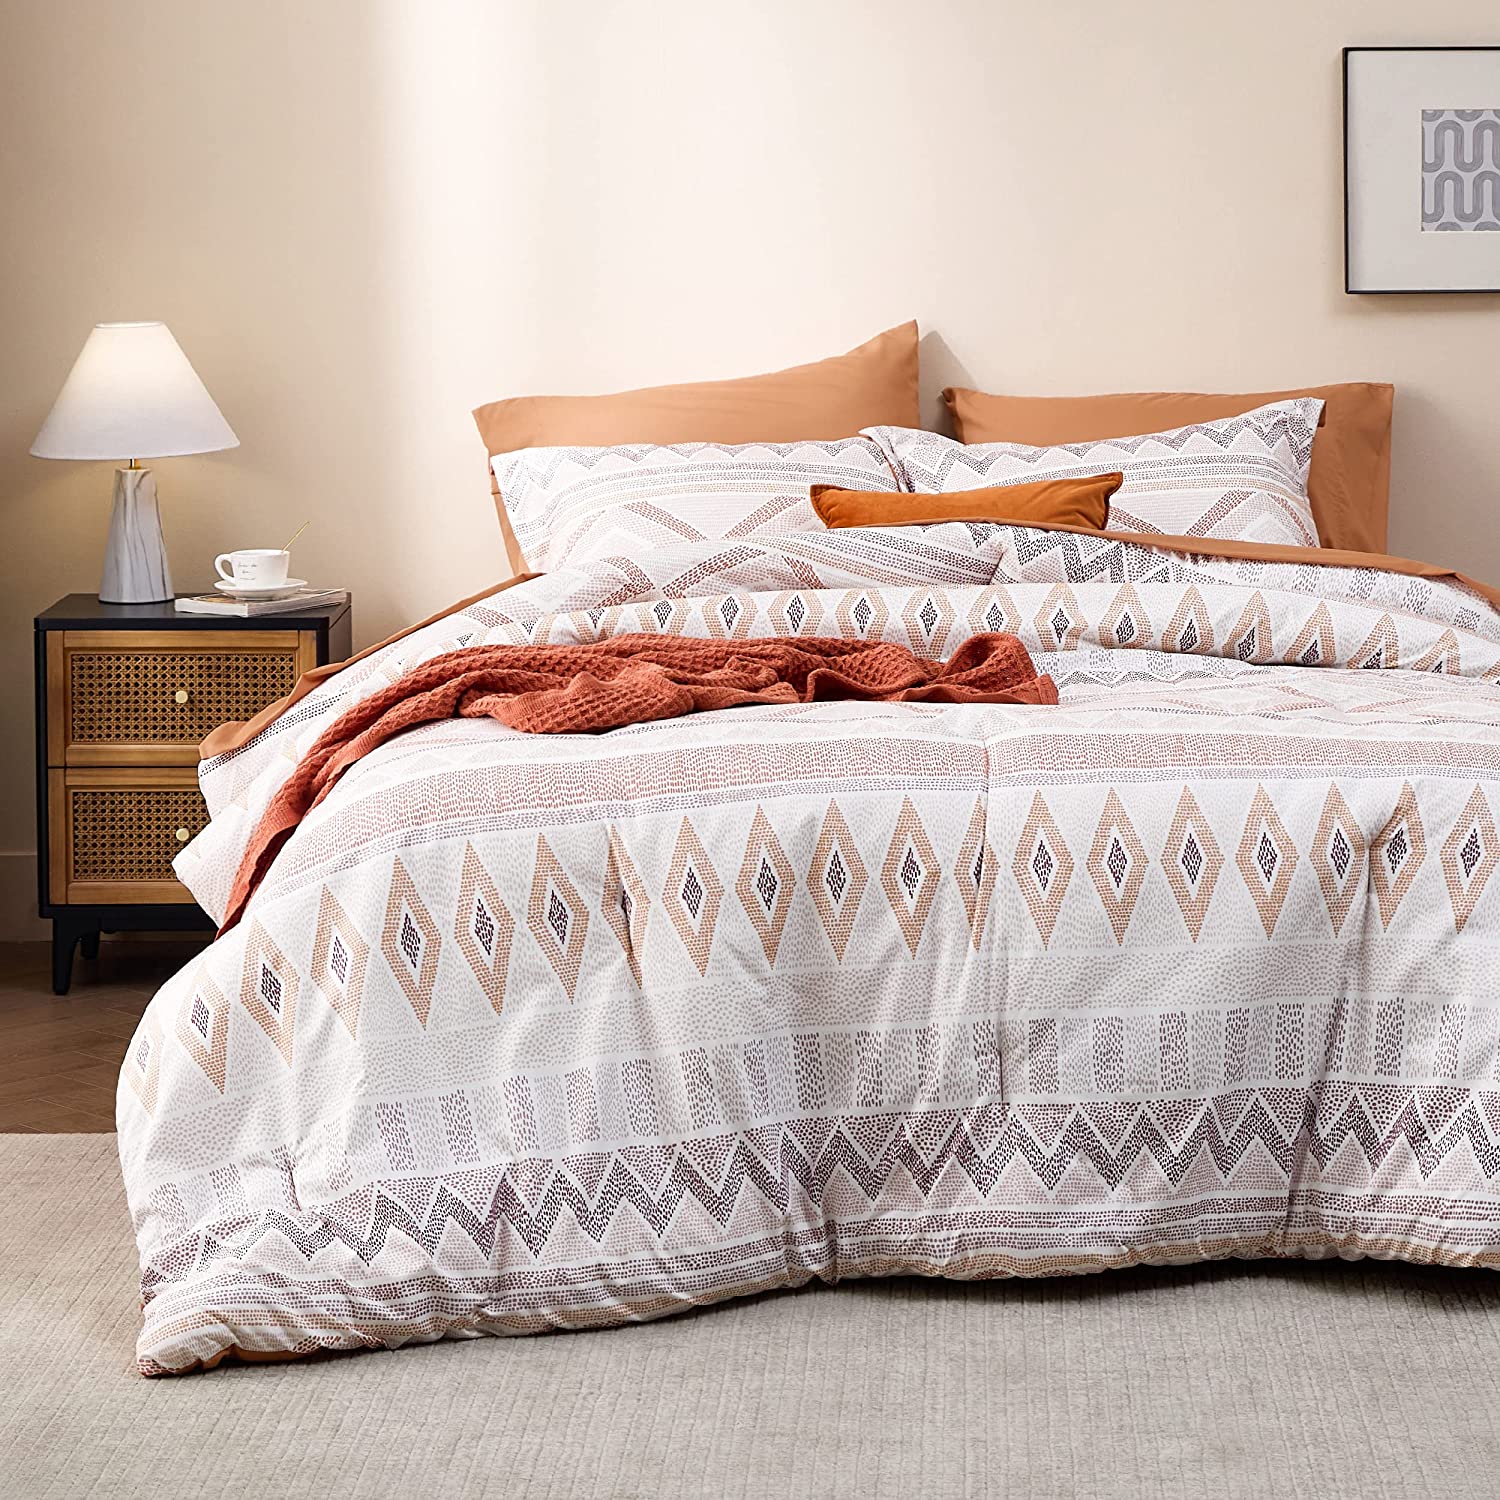  Bedsure Queen Comforter Set 7 Pieces - Navy Blue